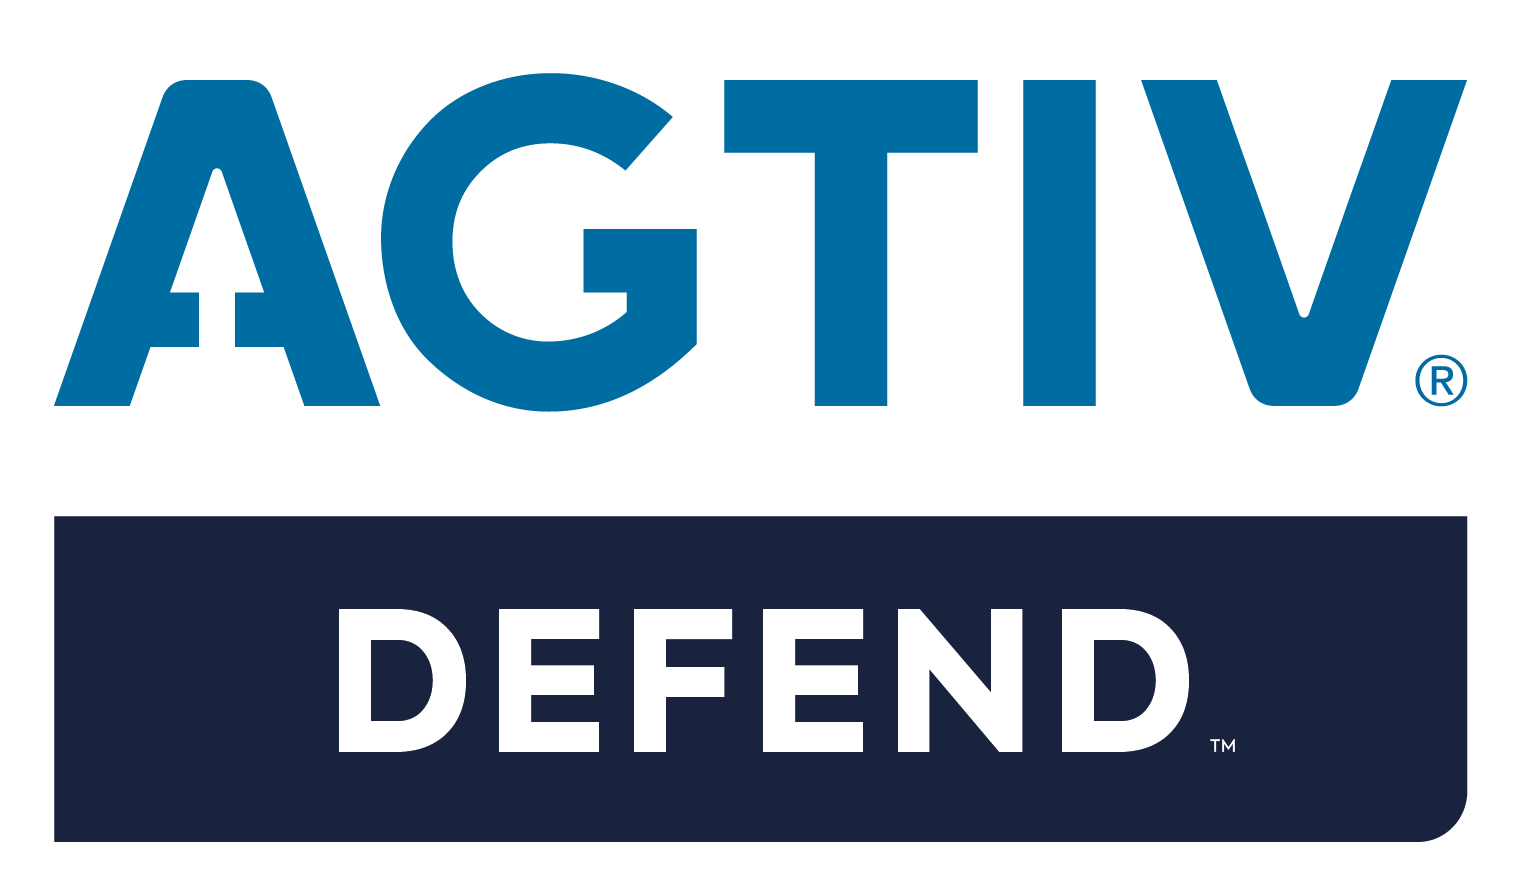 AGTIV DEFEND logo